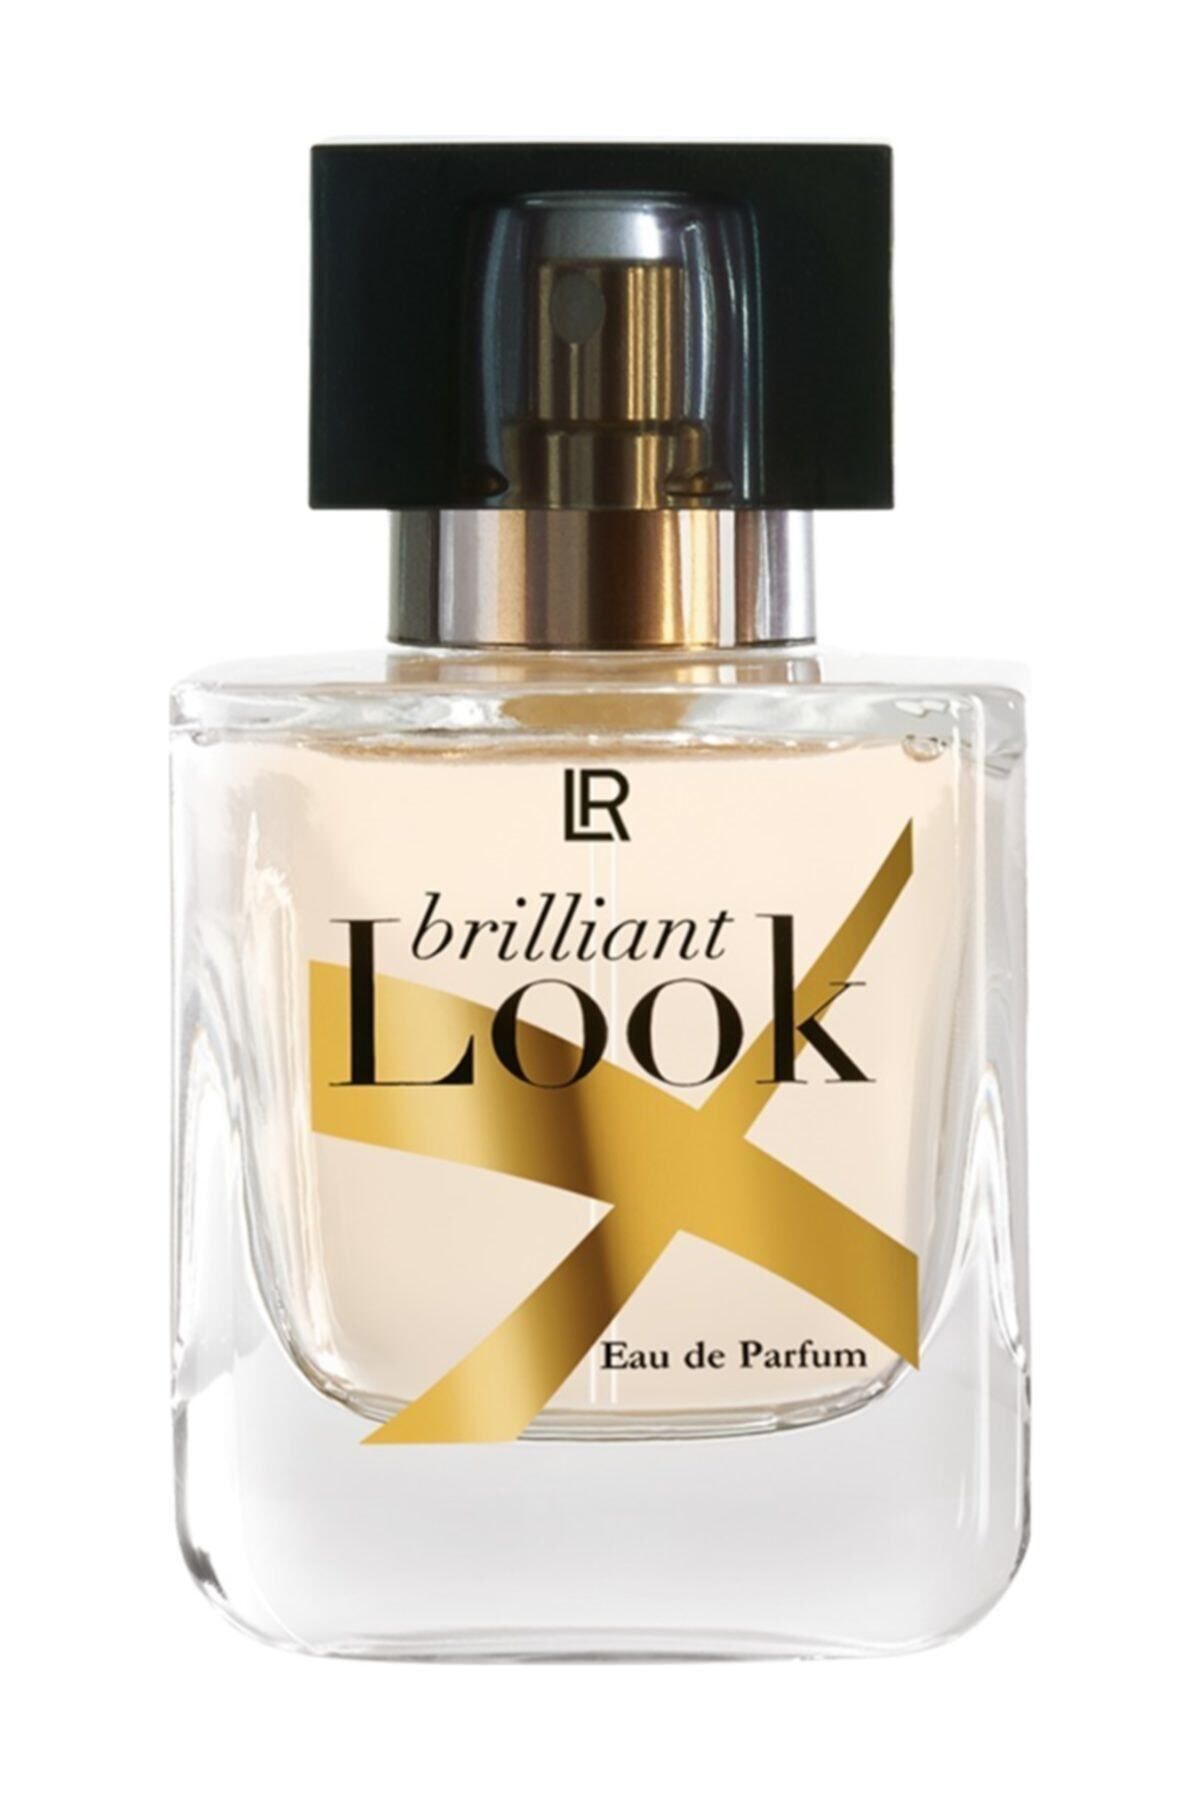 LR Brilliant Look Eau De Parfum - Kadın Parfümü 50 ml 600173981184